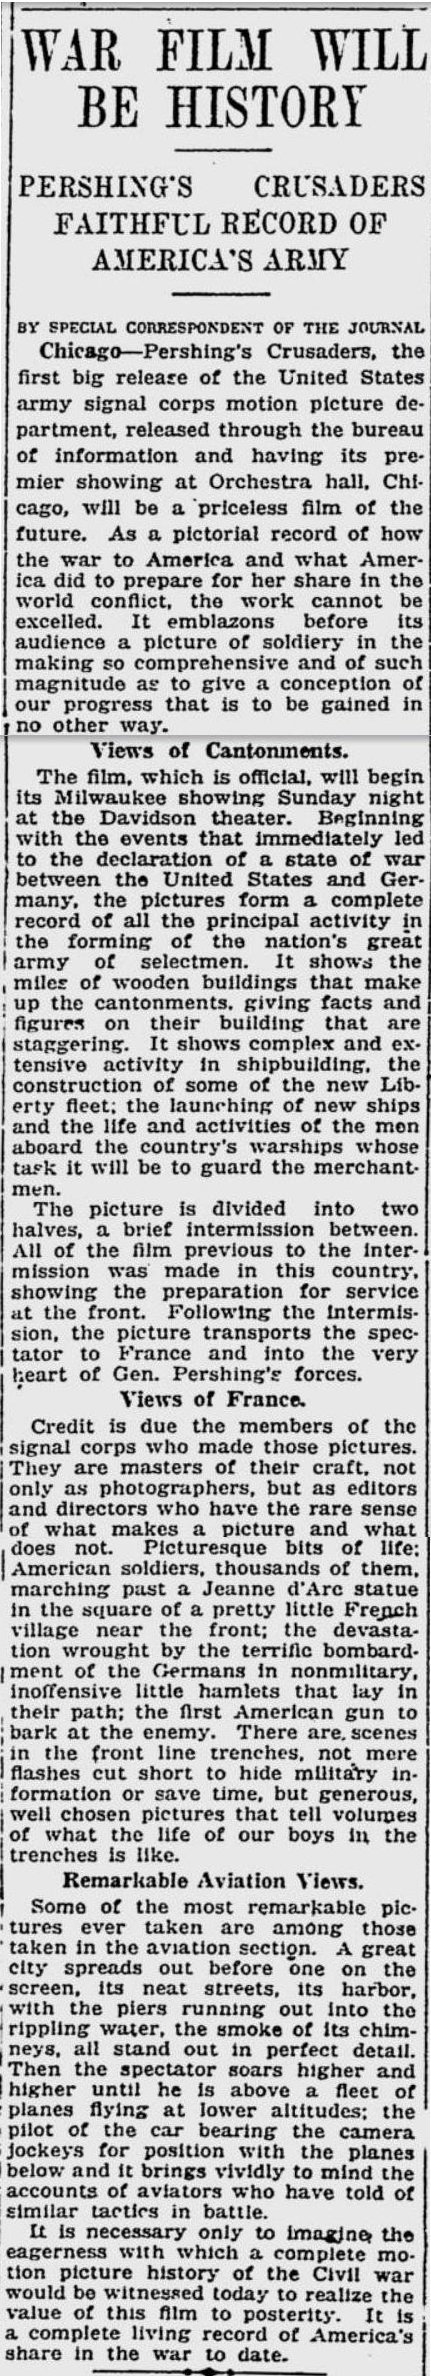 Pershing's Crusaders 1918 article